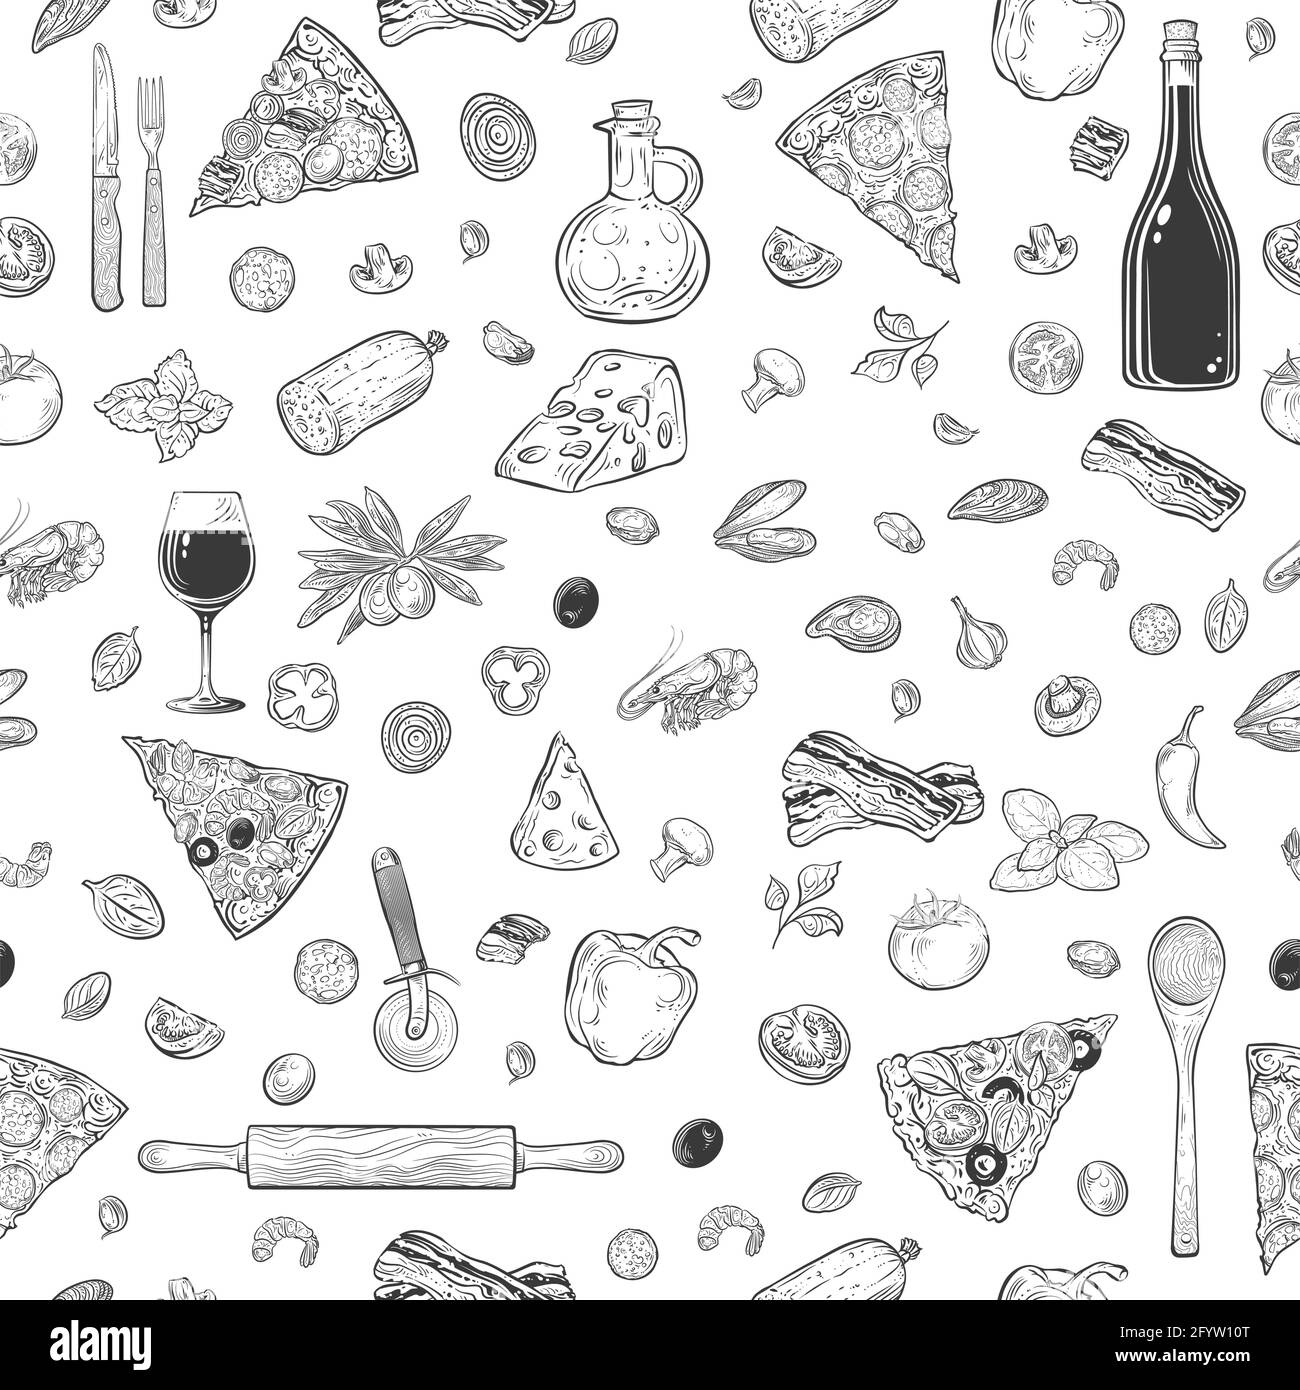 Vektor-Illustration nahtlose Muster mit Pizza mit verschiedenen Arten von Pizza, Besteck, Zutaten und Objekte im Zusammenhang mit Pizza, Vektor-Zeichnung Stock Vektor